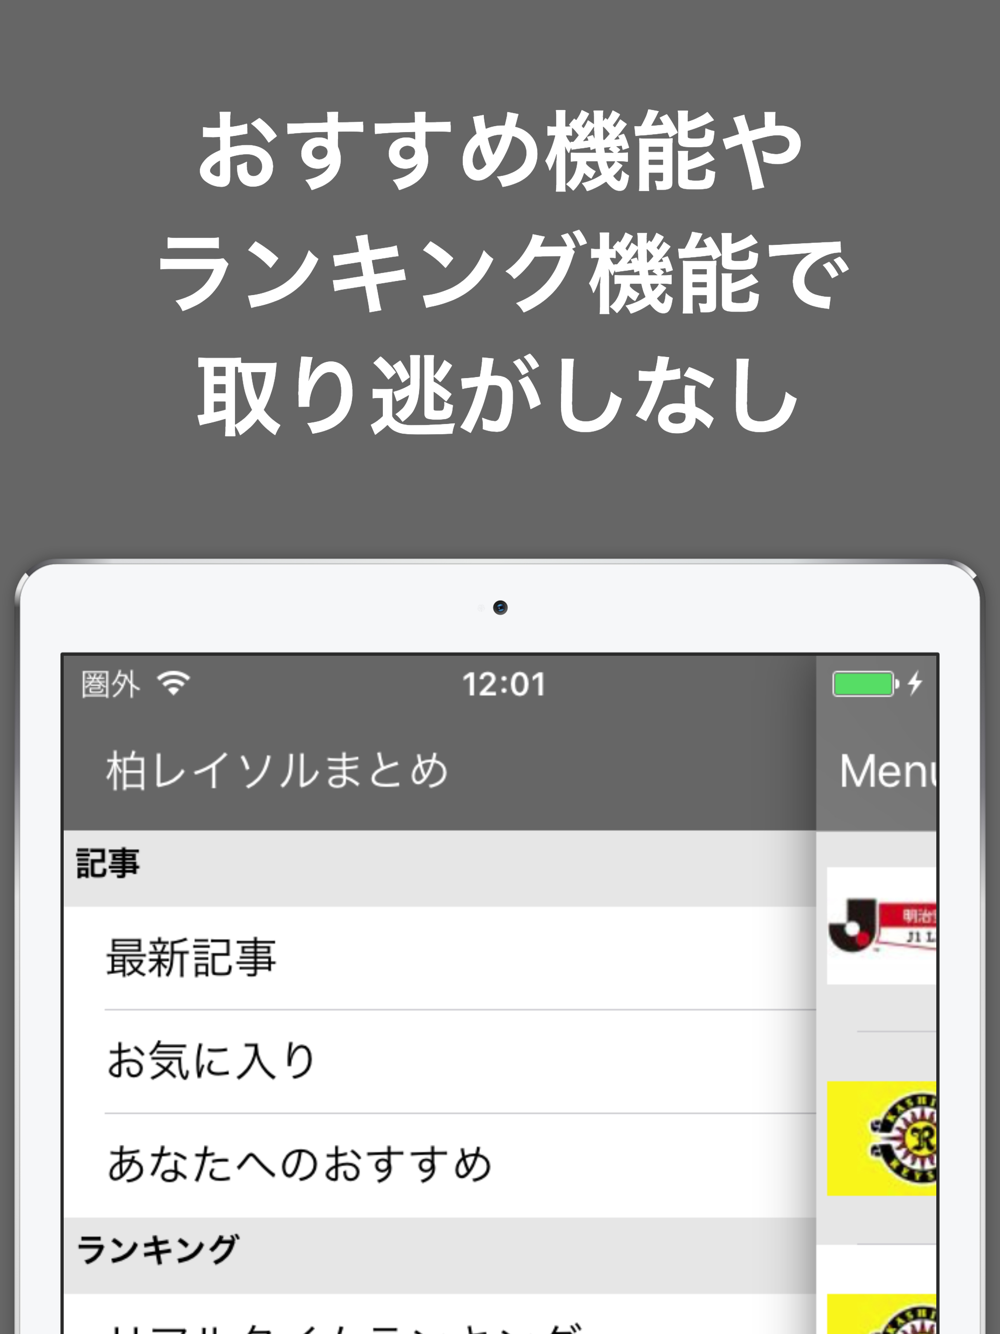 ブログまとめニュース速報 For 柏レイソル Free Download App For Iphone Steprimo Com